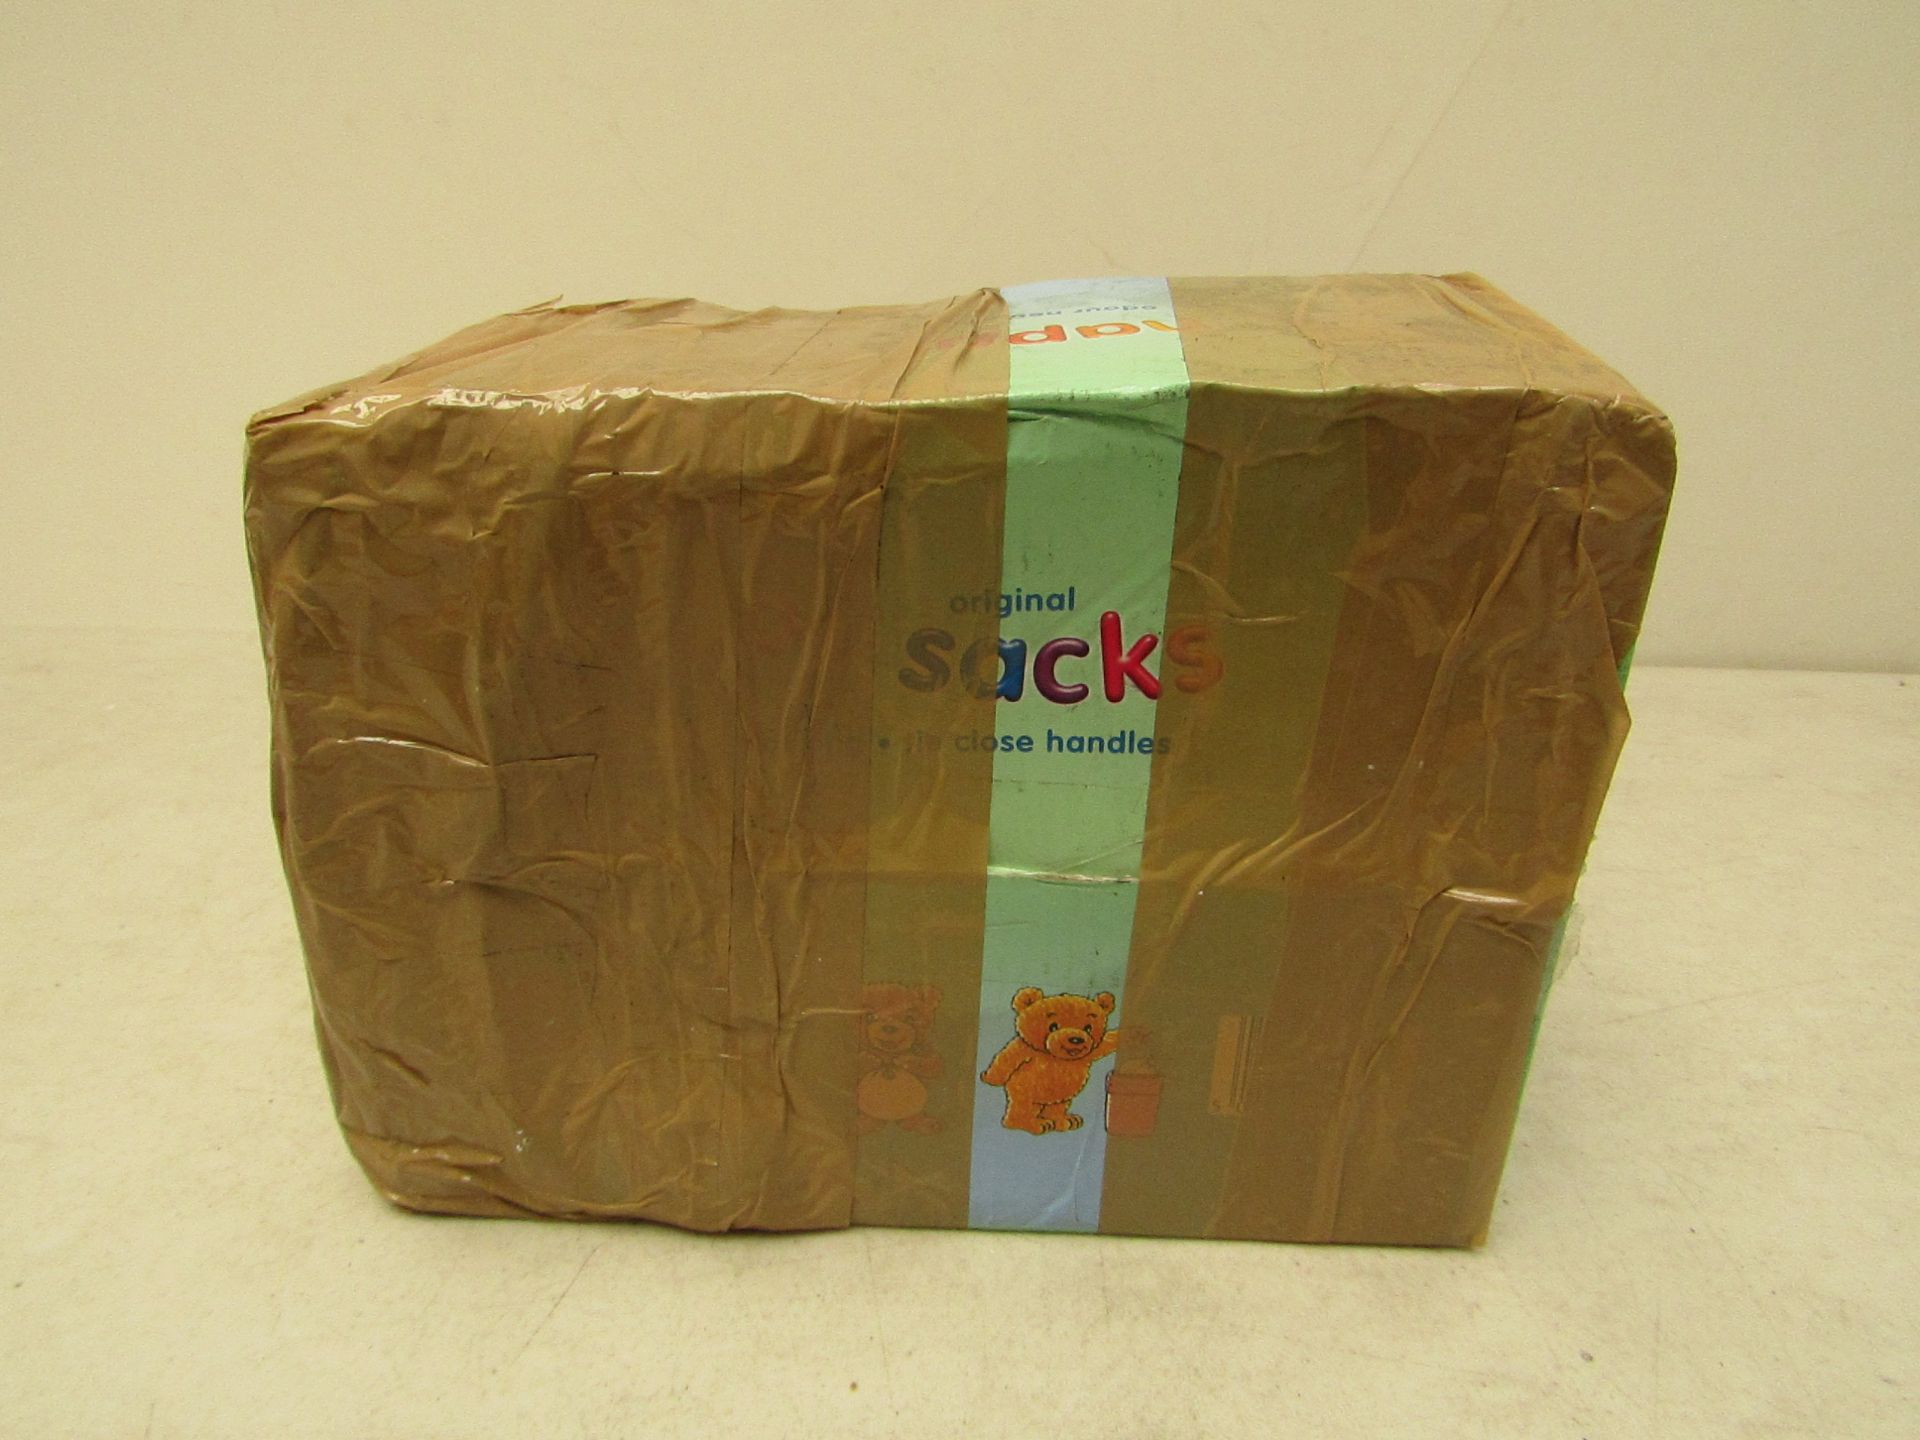 Boxe of 200 sacks nappy sack, boxed.